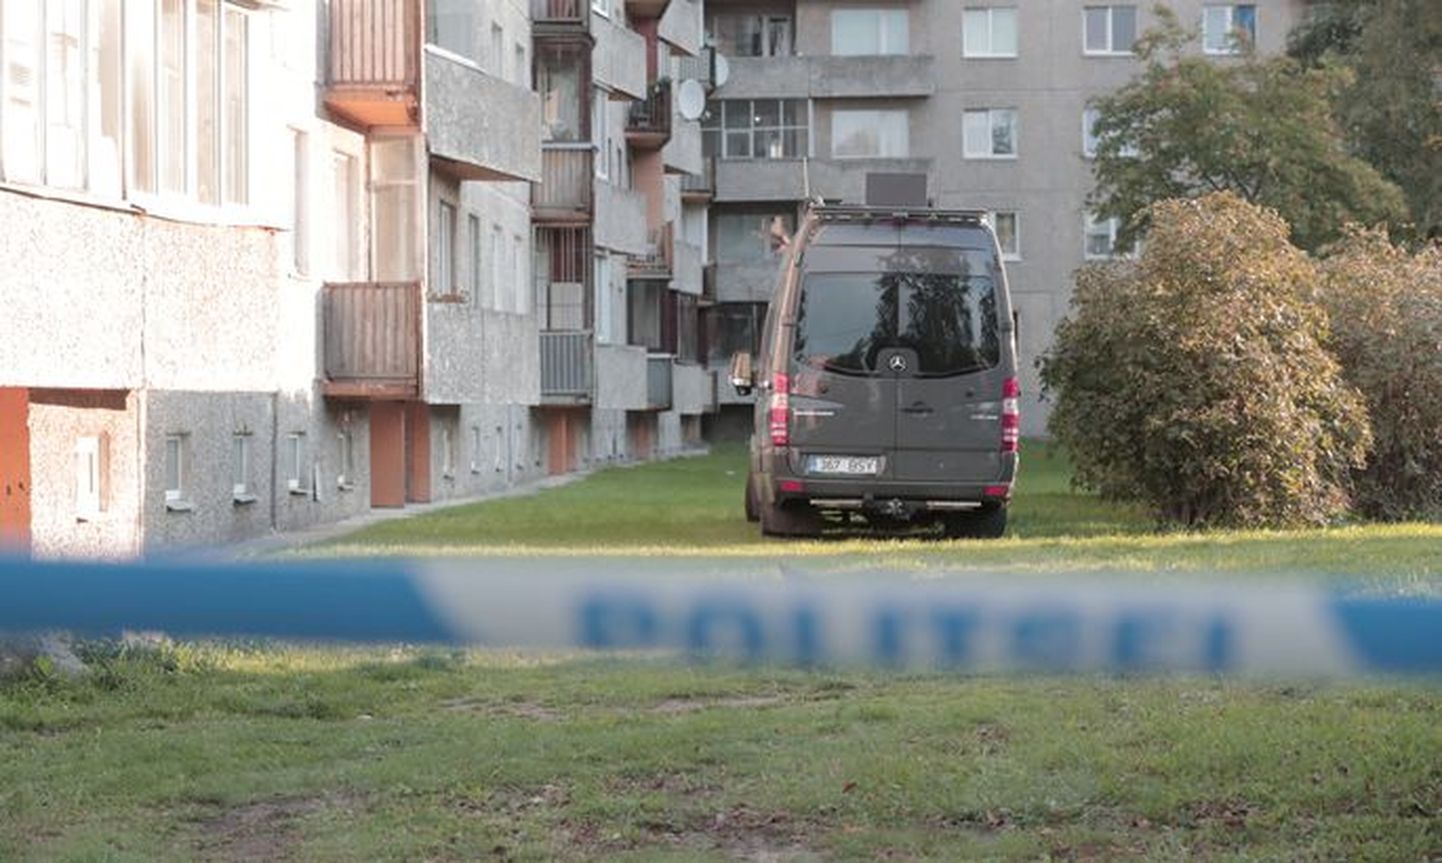 Ыйсмяэ-теэ, 64 в Таллинне, где действительно была обнаружена бомба.